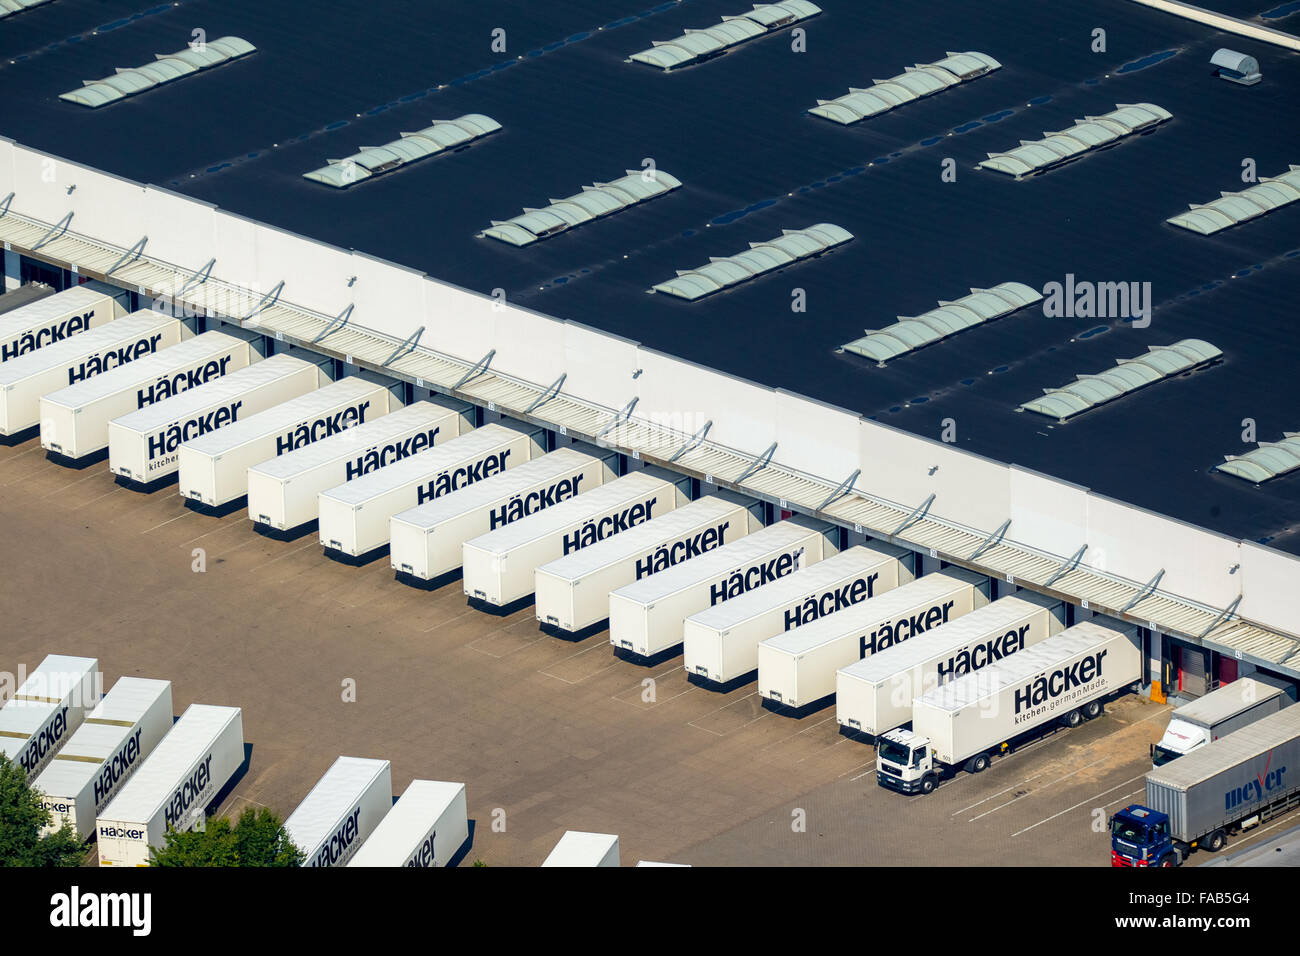 Vista aérea de Westfalia Oriental, fábrica de muebles, los hackers con numerosos camiones y semirremolques remolques de extradición, muebles Foto de stock